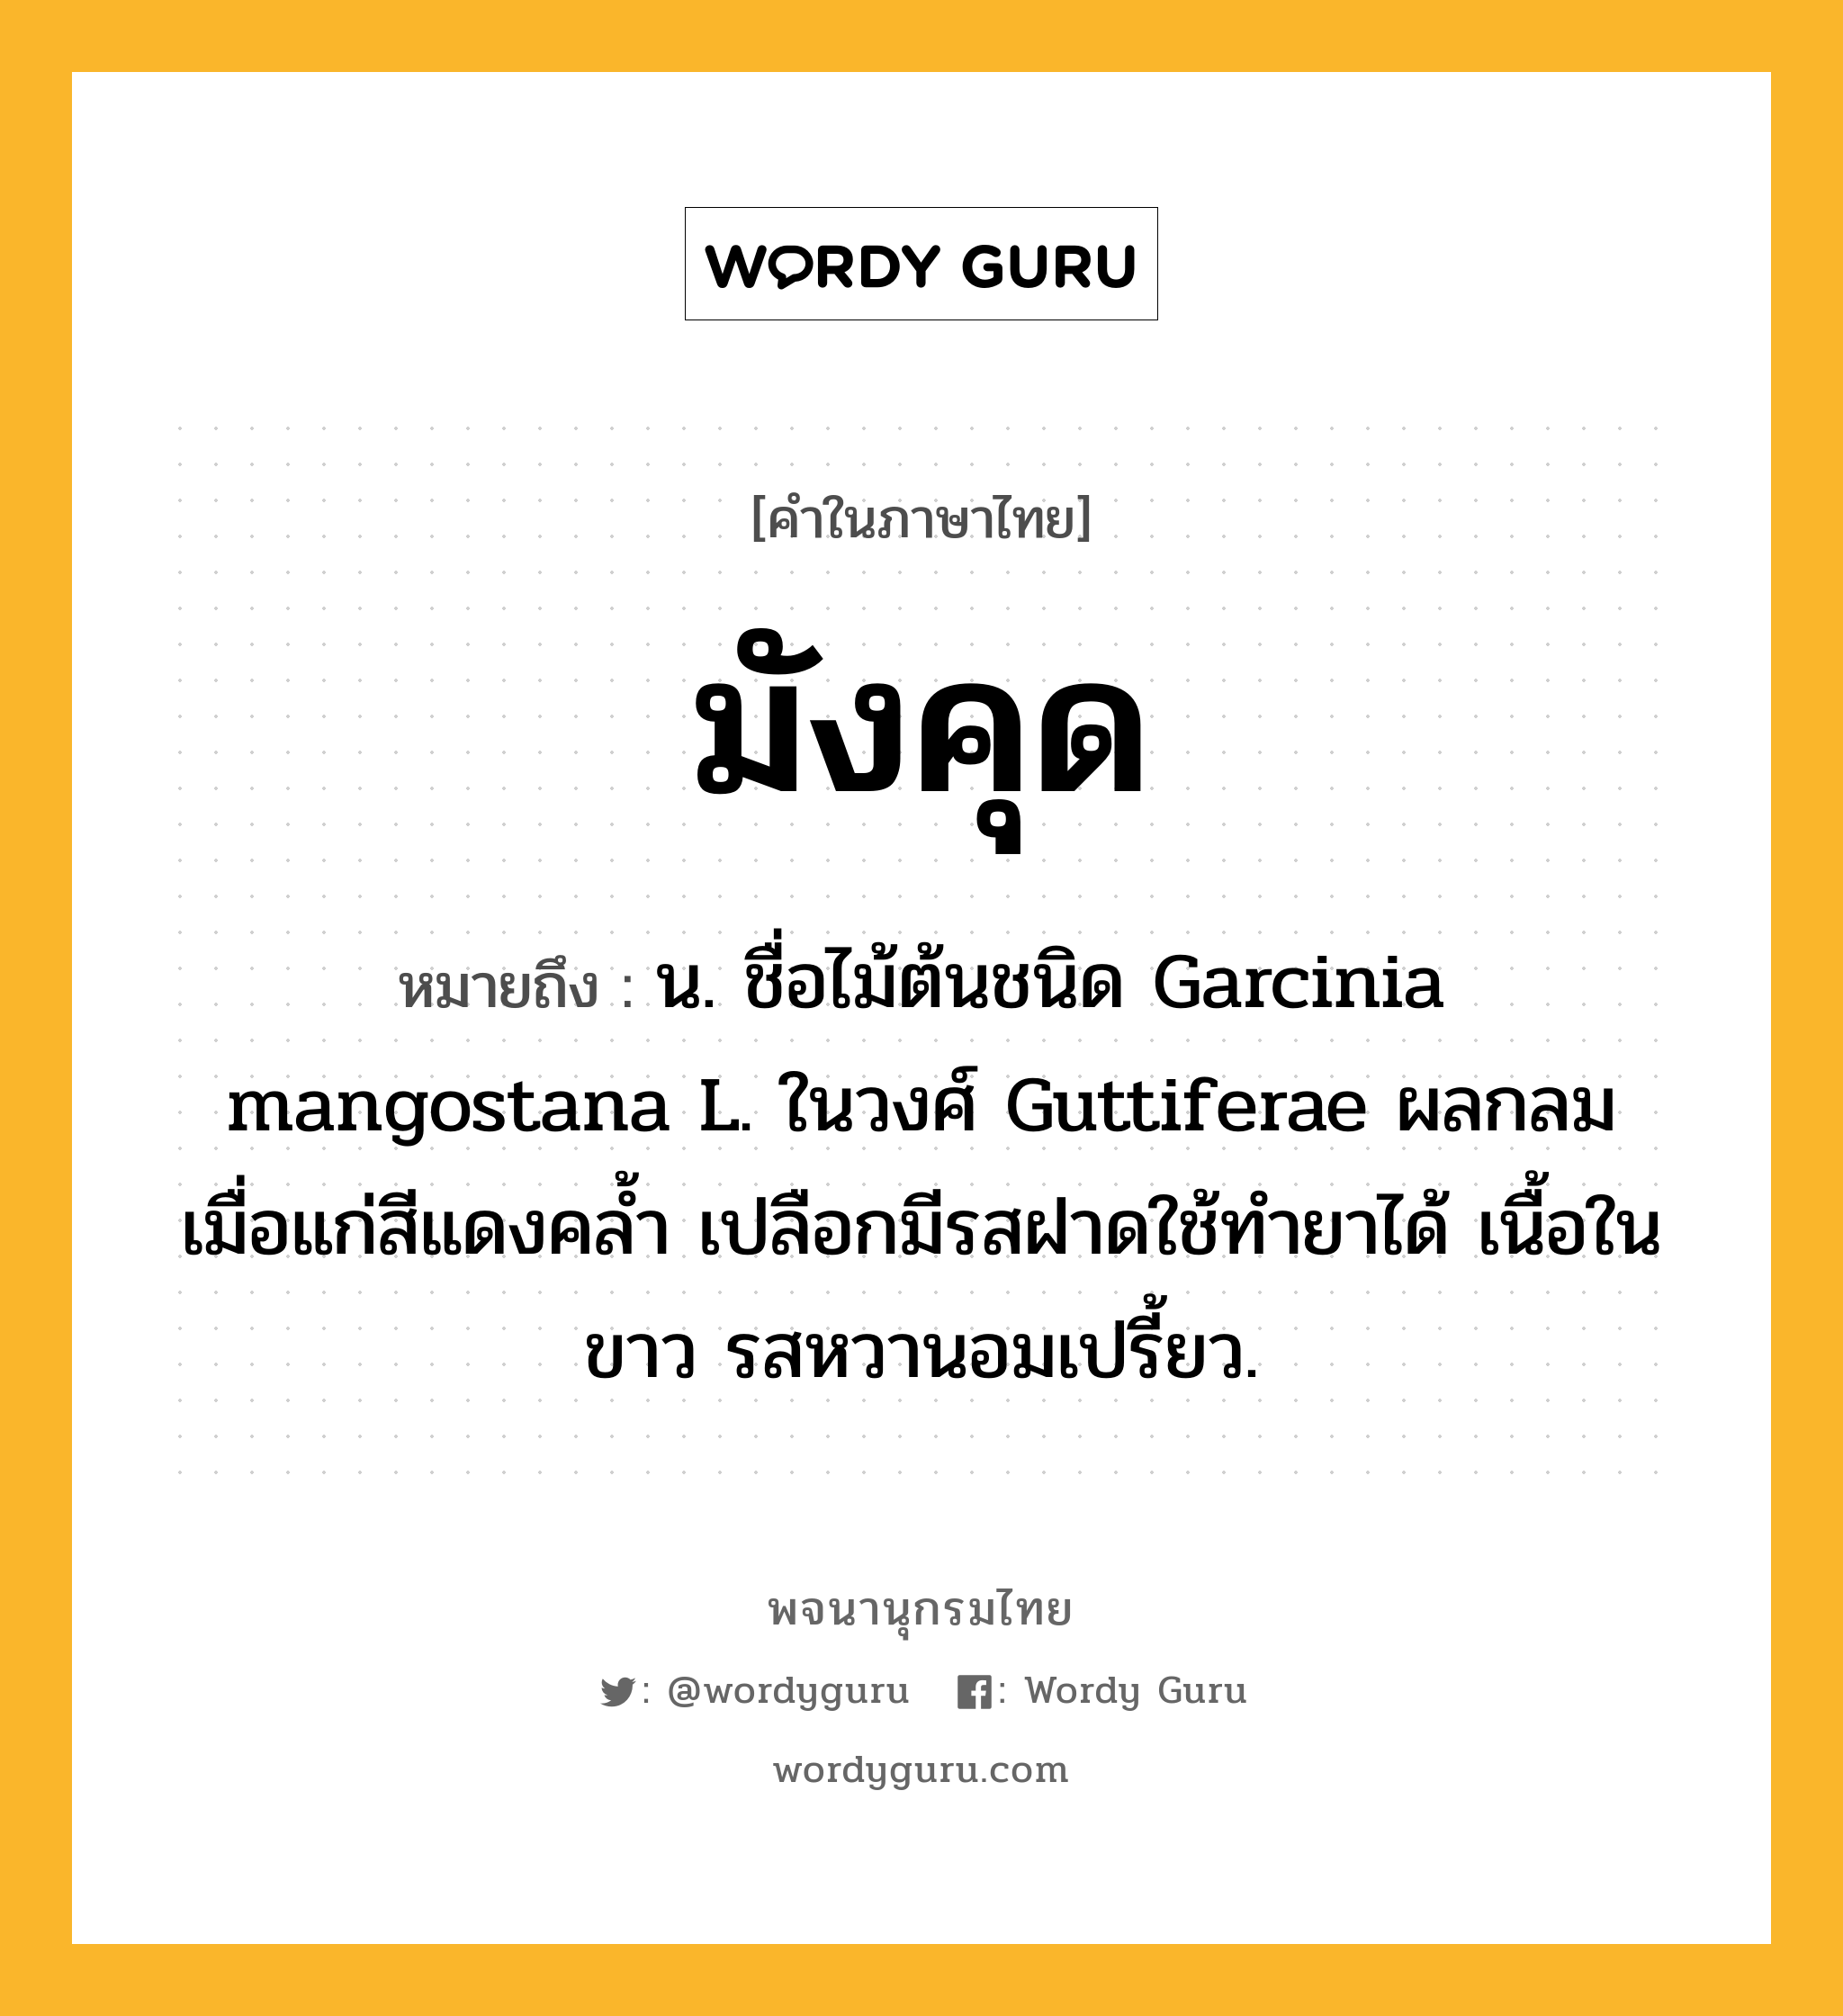 มังคุด หมายถึงอะไร?, คำในภาษาไทย มังคุด หมายถึง น. ชื่อไม้ต้นชนิด Garcinia mangostana L. ในวงศ์ Guttiferae ผลกลม เมื่อแก่สีแดงคลํ้า เปลือกมีรสฝาดใช้ทํายาได้ เนื้อในขาว รสหวานอมเปรี้ยว.